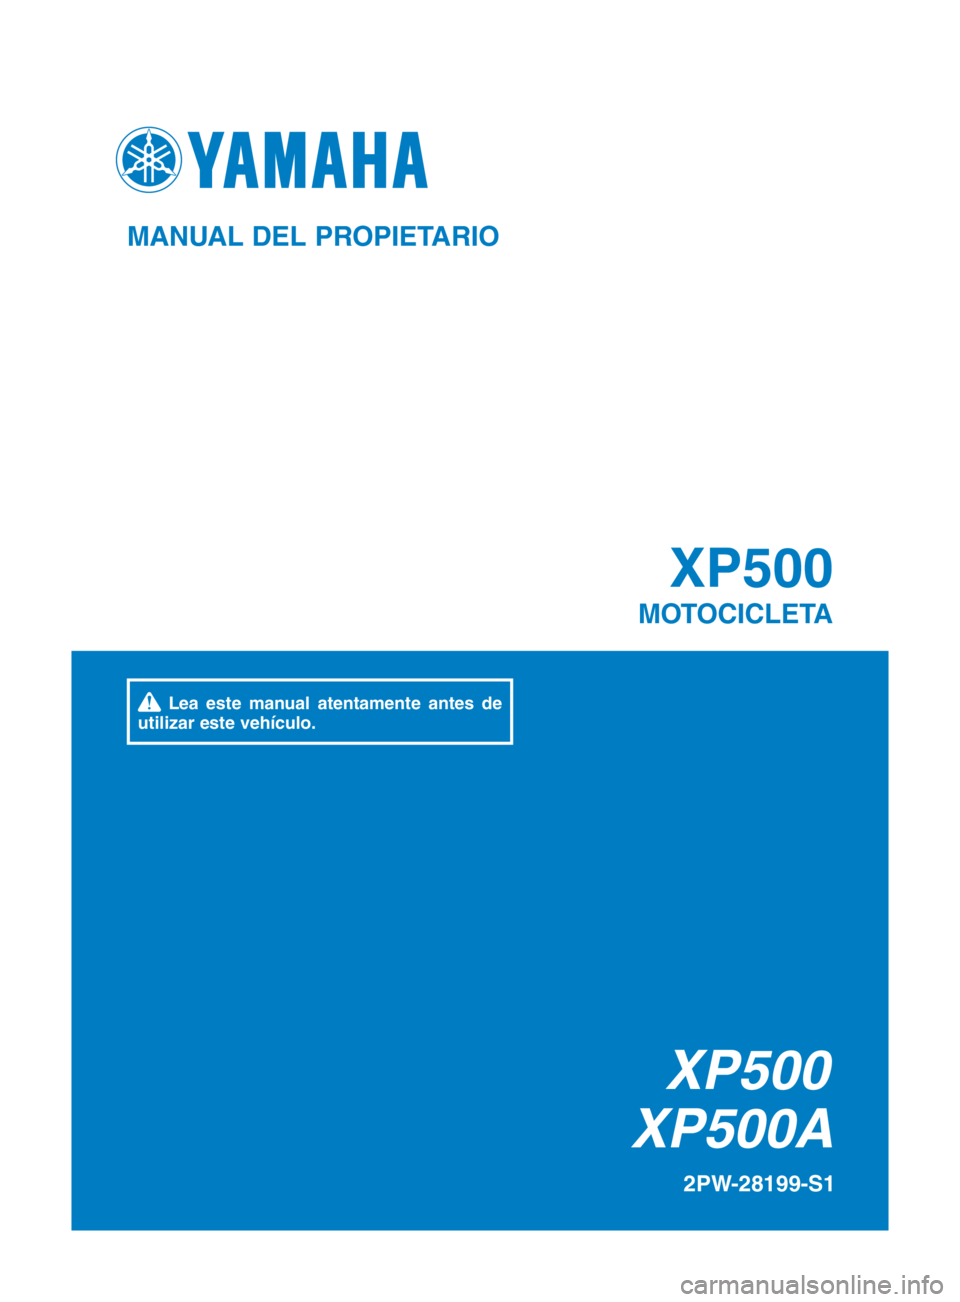 YAMAHA TMAX 2016  Manuale de Empleo (in Spanish) XP500
XP500A XP500
MOTOCICLETA
2PW-28199-S1
MANUAL DEL PROPIETARIO
 Lea este manual atentamente antes de 
utilizar este vehículo.
2PW-9-S1_cover.indd   12015/09/16   15:58:29 